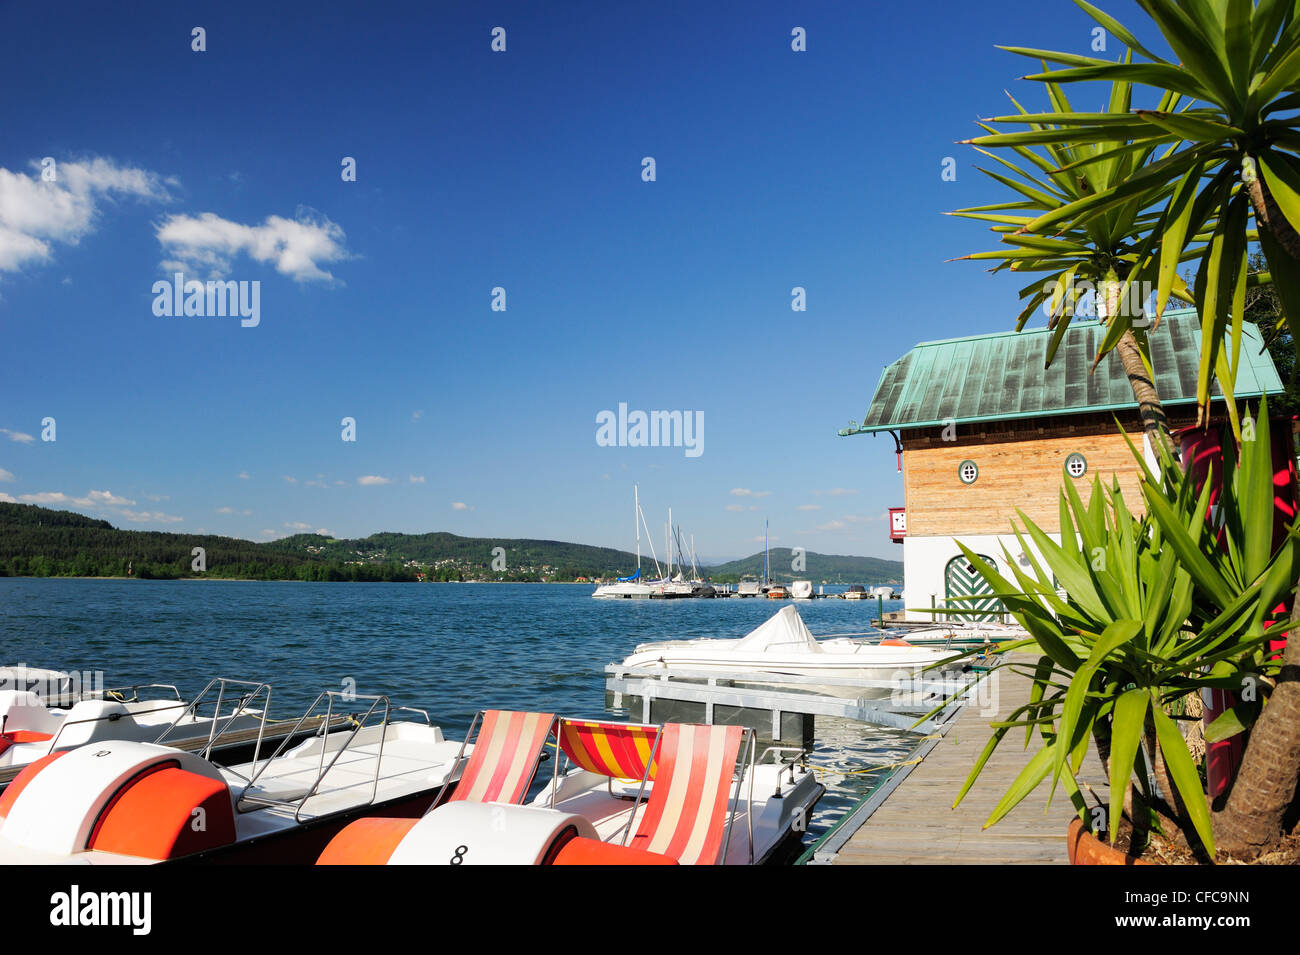 Ponton en bois avec des bateaux à voile et bateaux à pédales, du lac Wörthersee, Carinthie, Autriche, Europe Banque D'Images